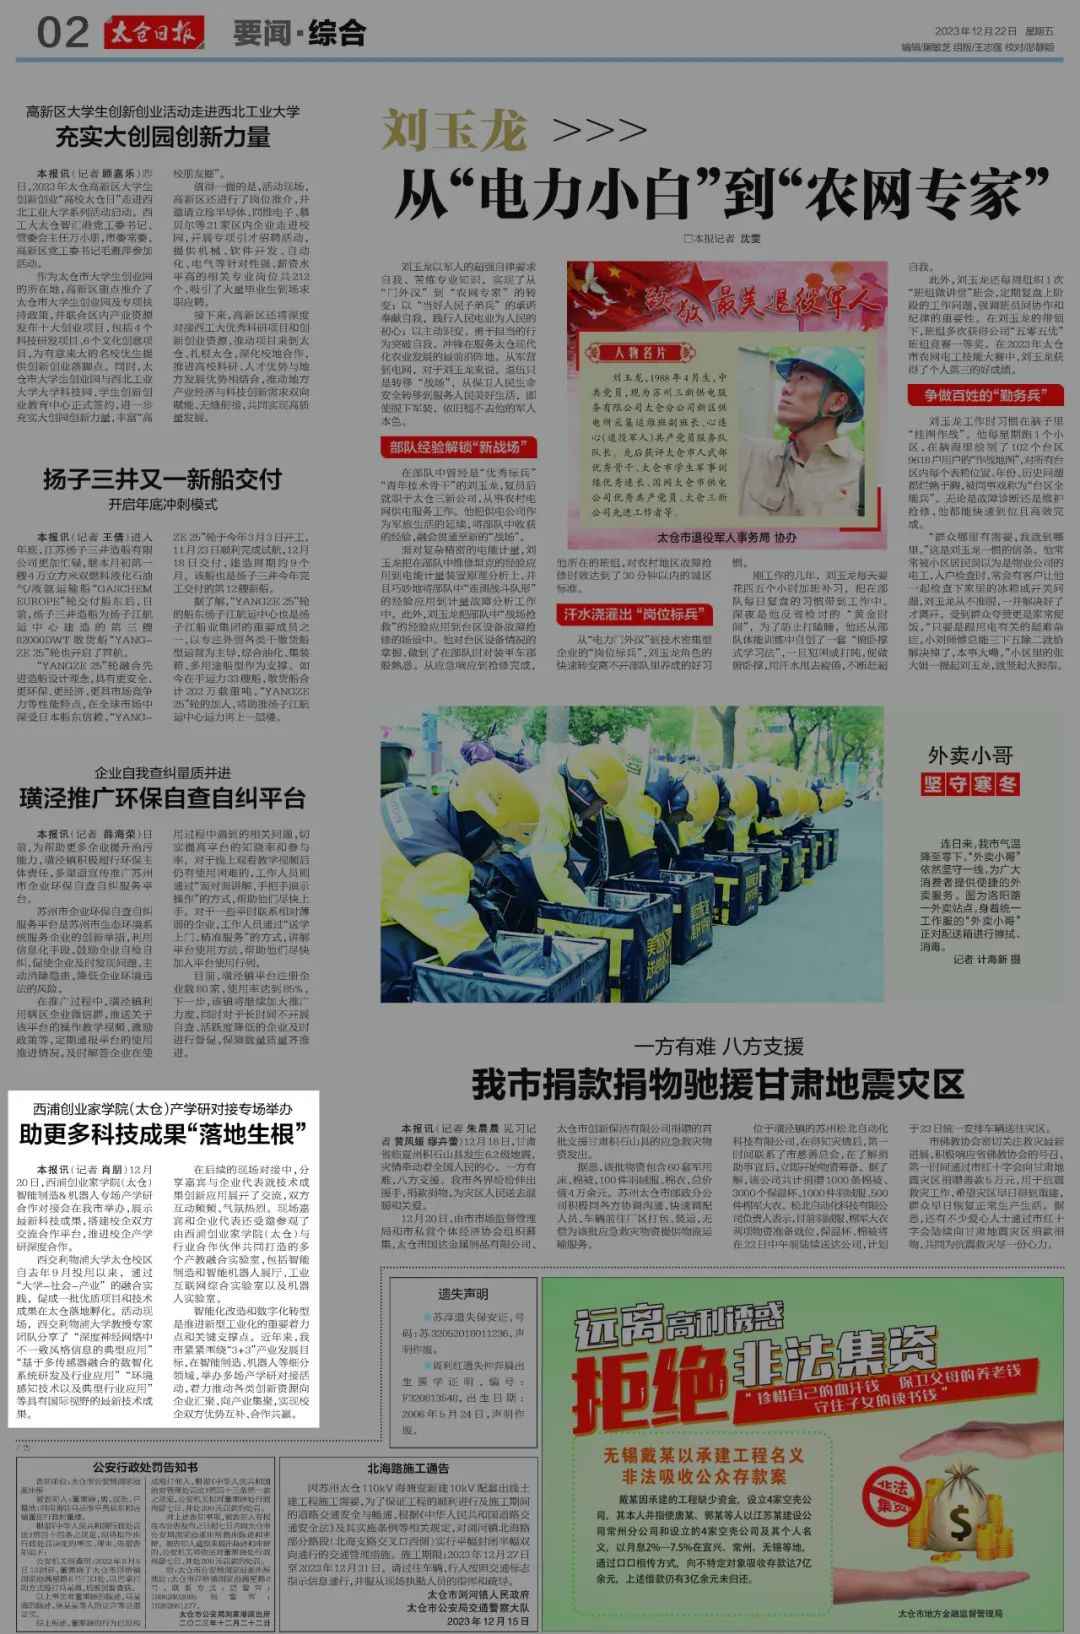 光明日报、中国科学报、中国社会科学报、SCIENMAG等多家中外媒体聚焦西浦1-2月大新闻